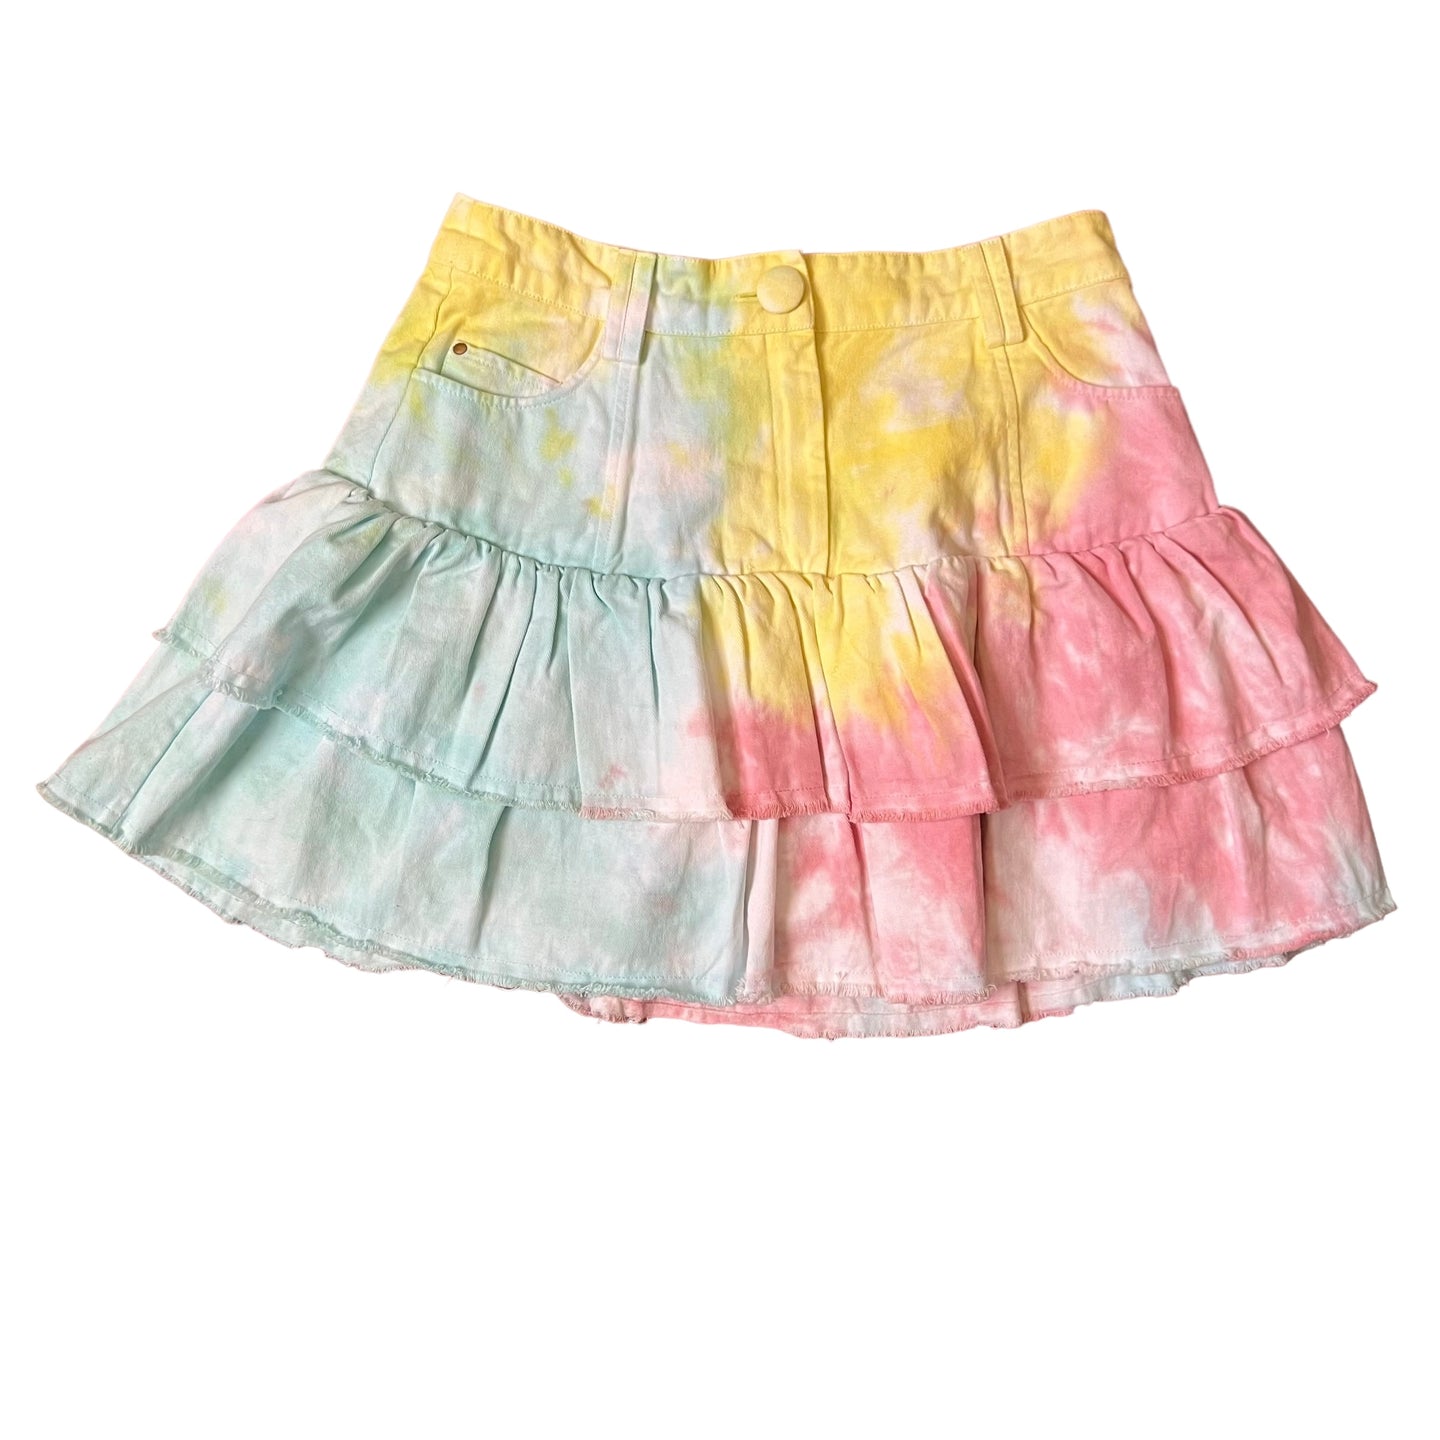 Free People Love Shack Fancy Landen mini Skirt Size 4